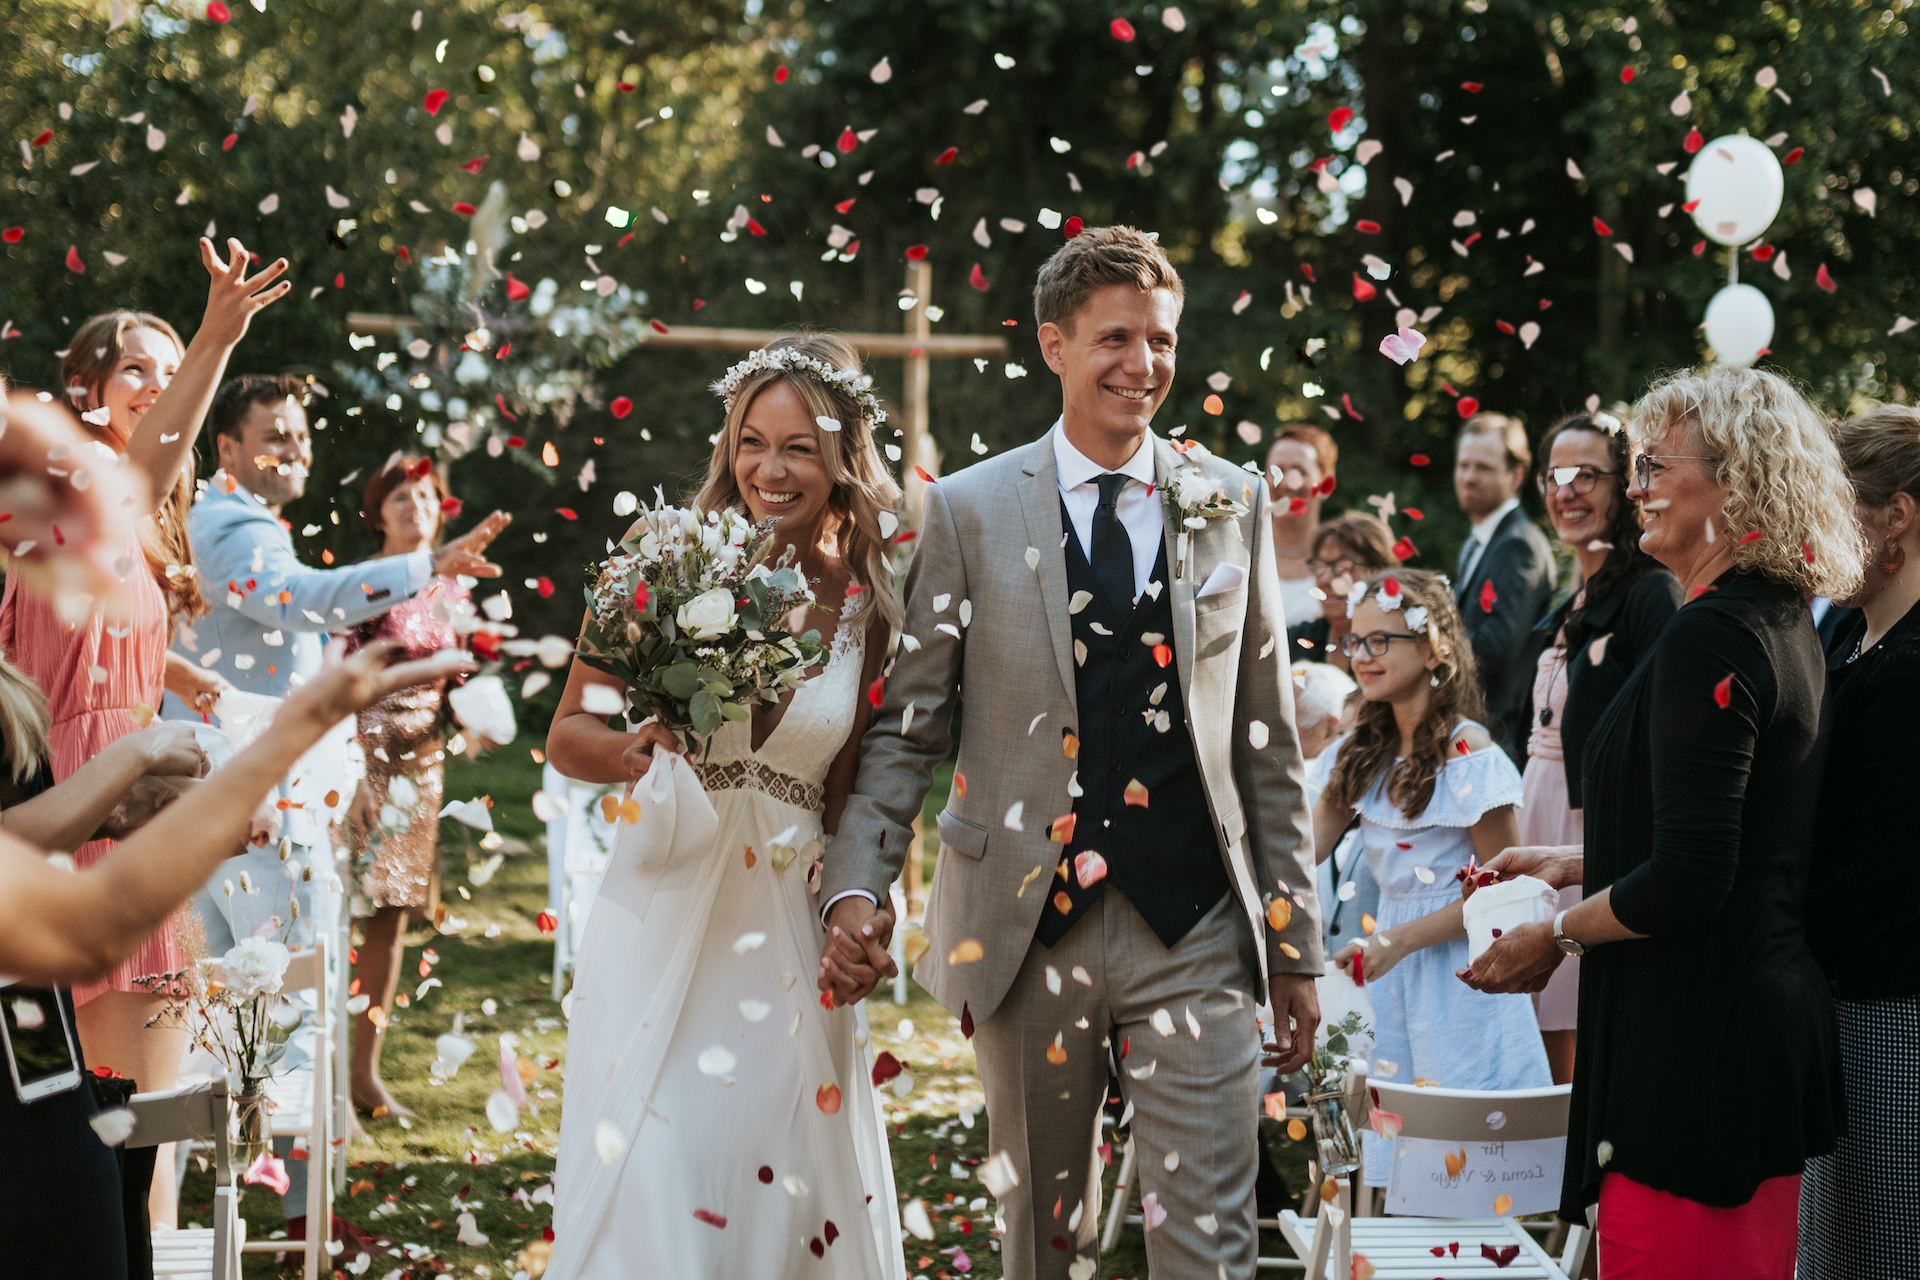 ein Brautpaar läuft lachend durch einen Konfettiregen von Blüten nach der Trauung (/images/bilder/thumbs/376_1_bild_5G1A3795_Kopie_2.jpg)